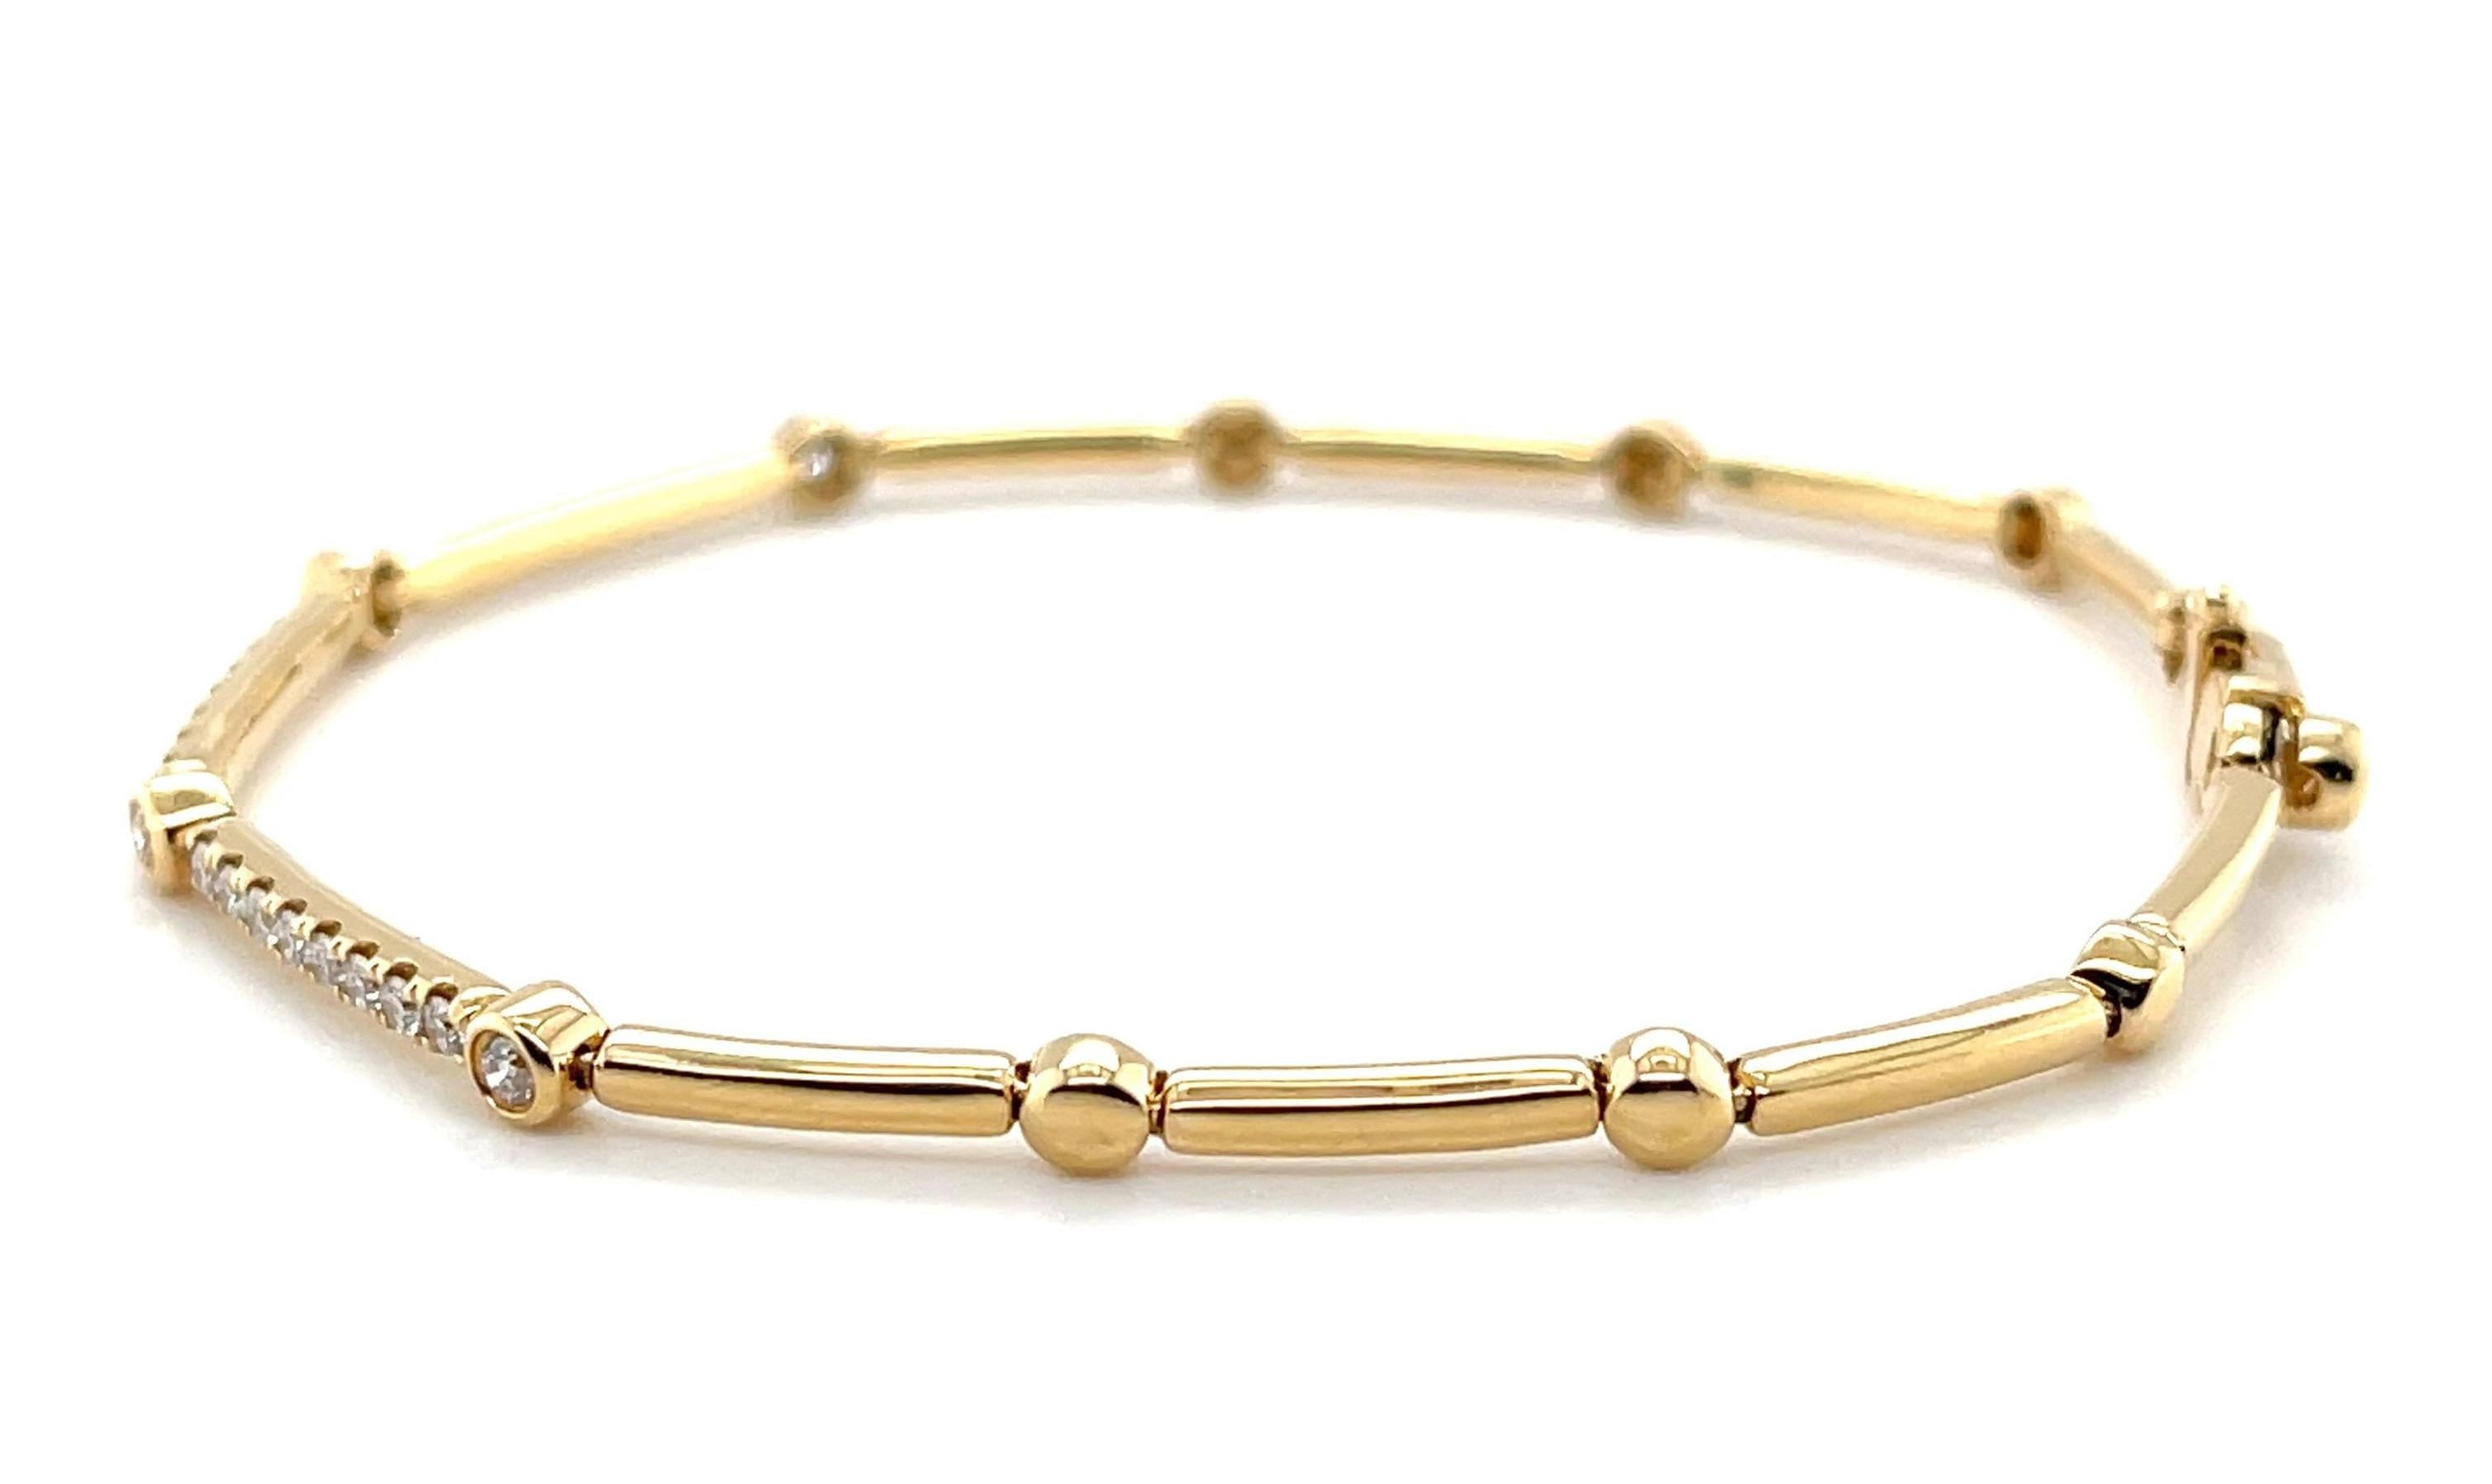 Taille ronde Bracelet à maillons en or jaune 18k et diamants, poids total de 0,54 carats